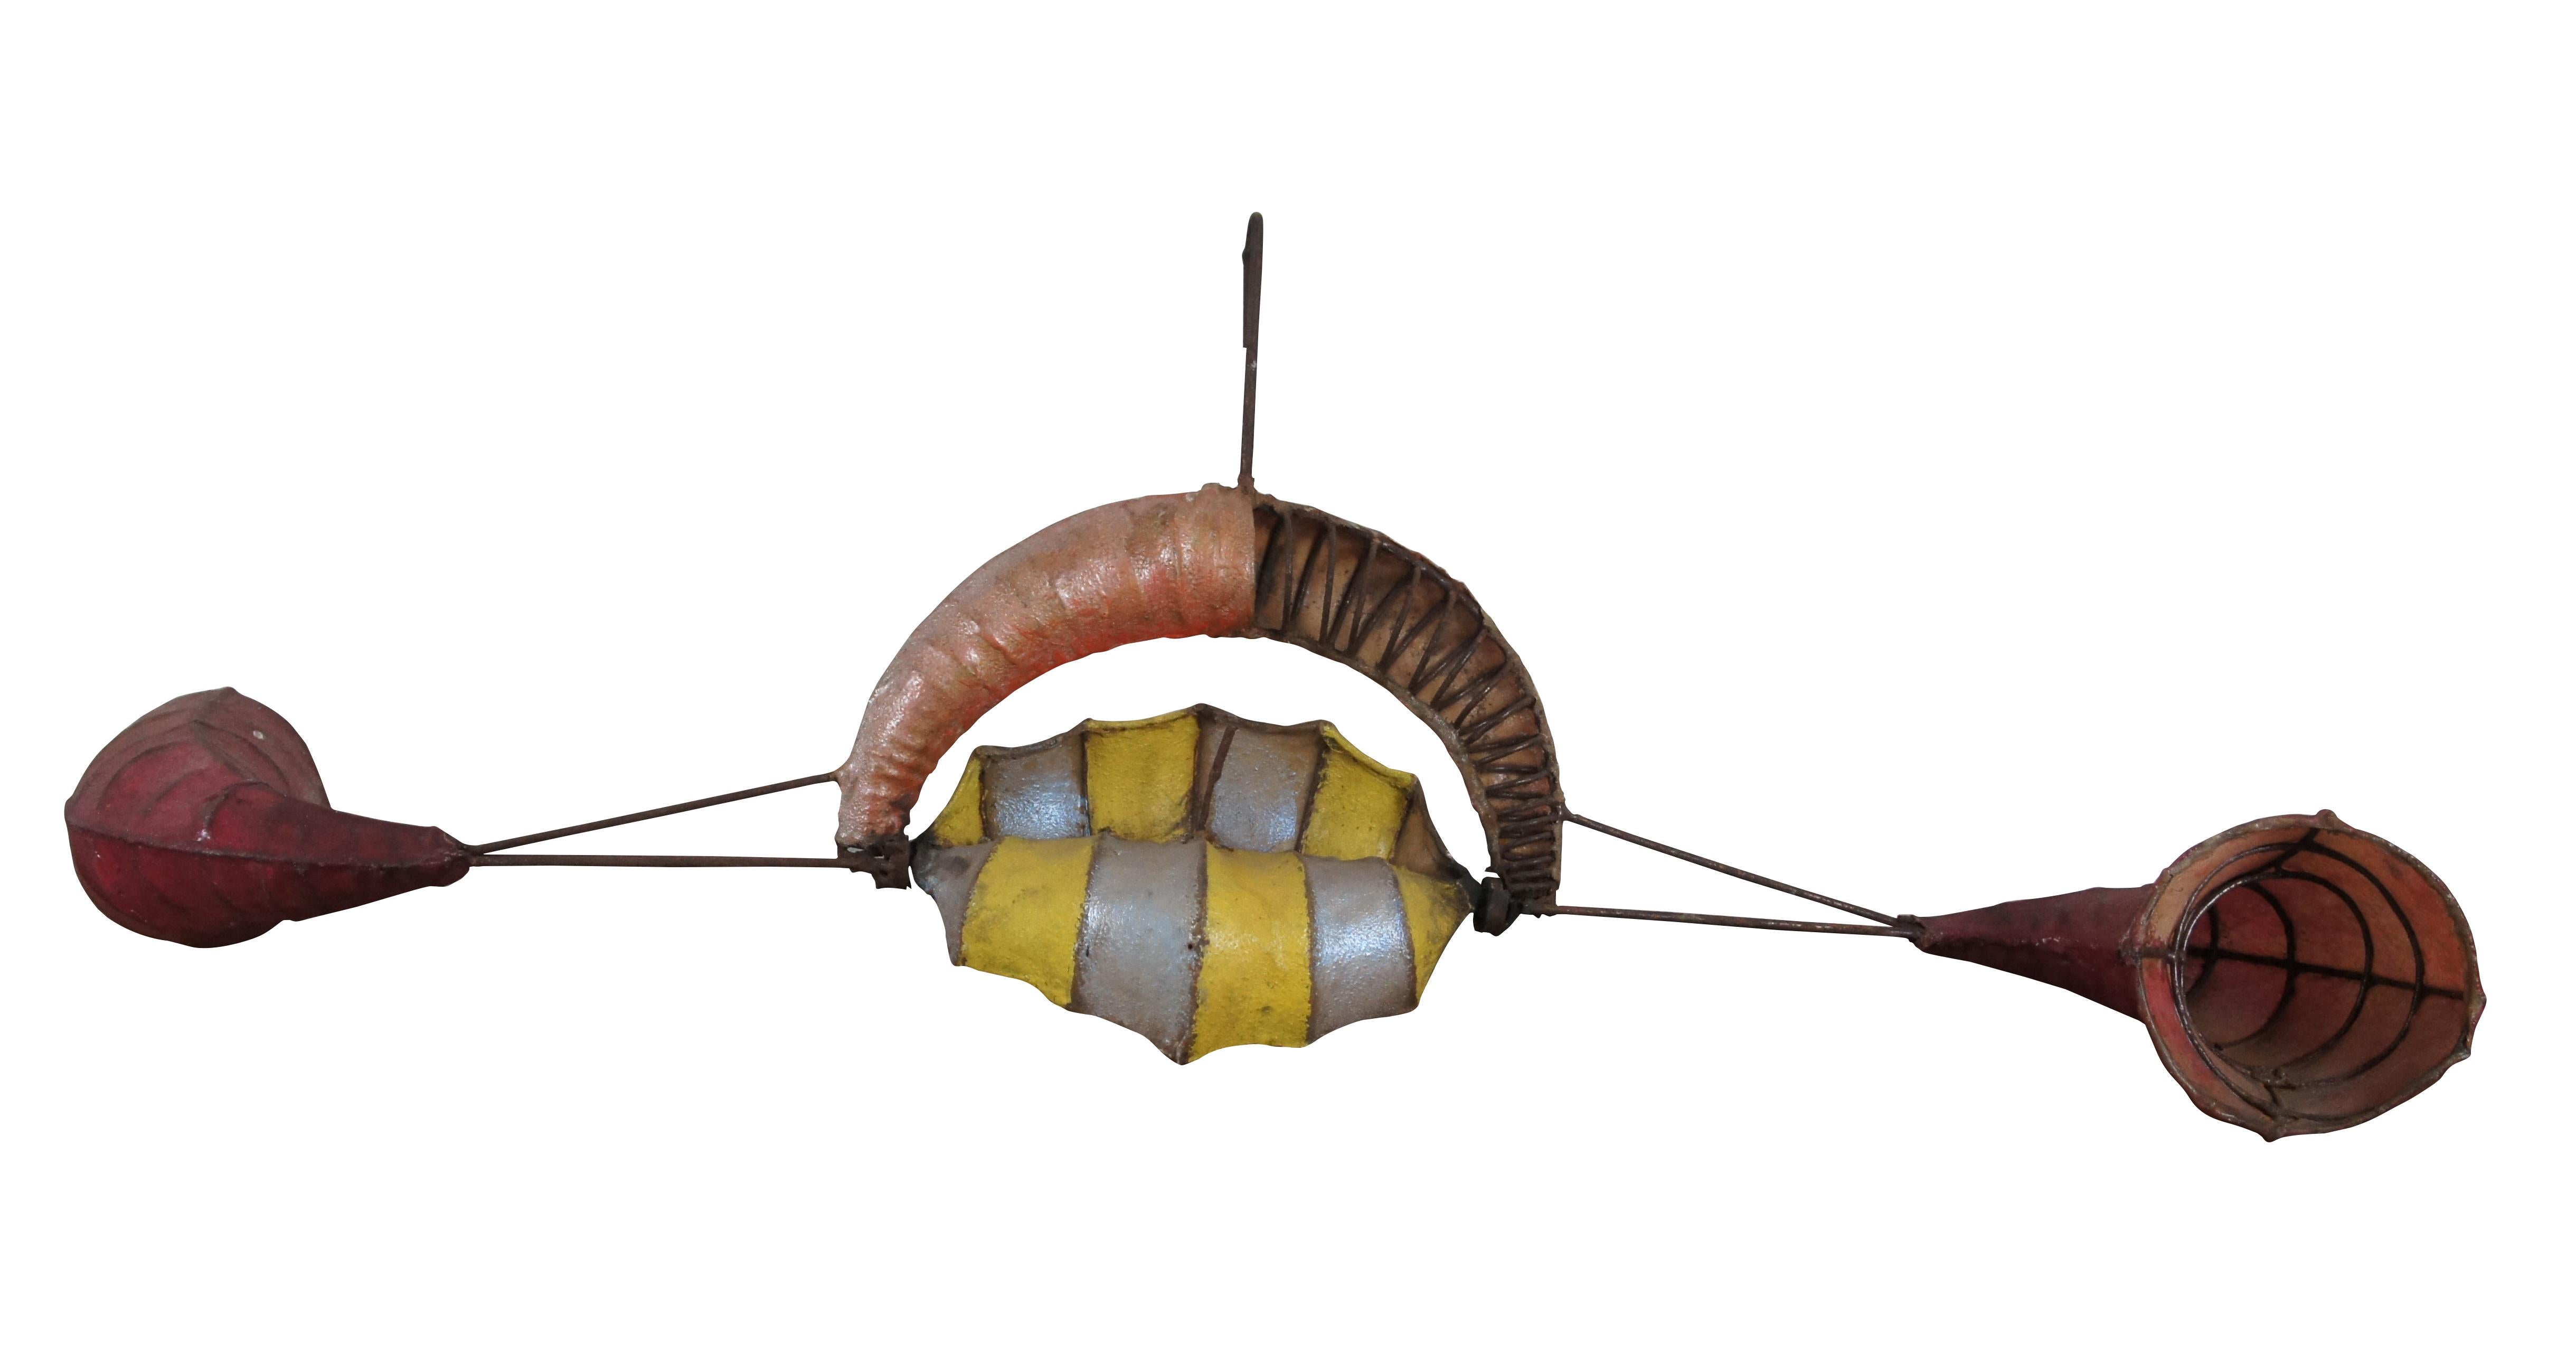 
Une impressionnante sculpture cinétique du vent / Whirligig d'Anthony Howe, vers les années 1980.   Fabriqué en fer enroulé/soudé et en résine/composite, avec des ornements en forme de cornes et de coquillages.

Anthony Howe (né en 1954) est un